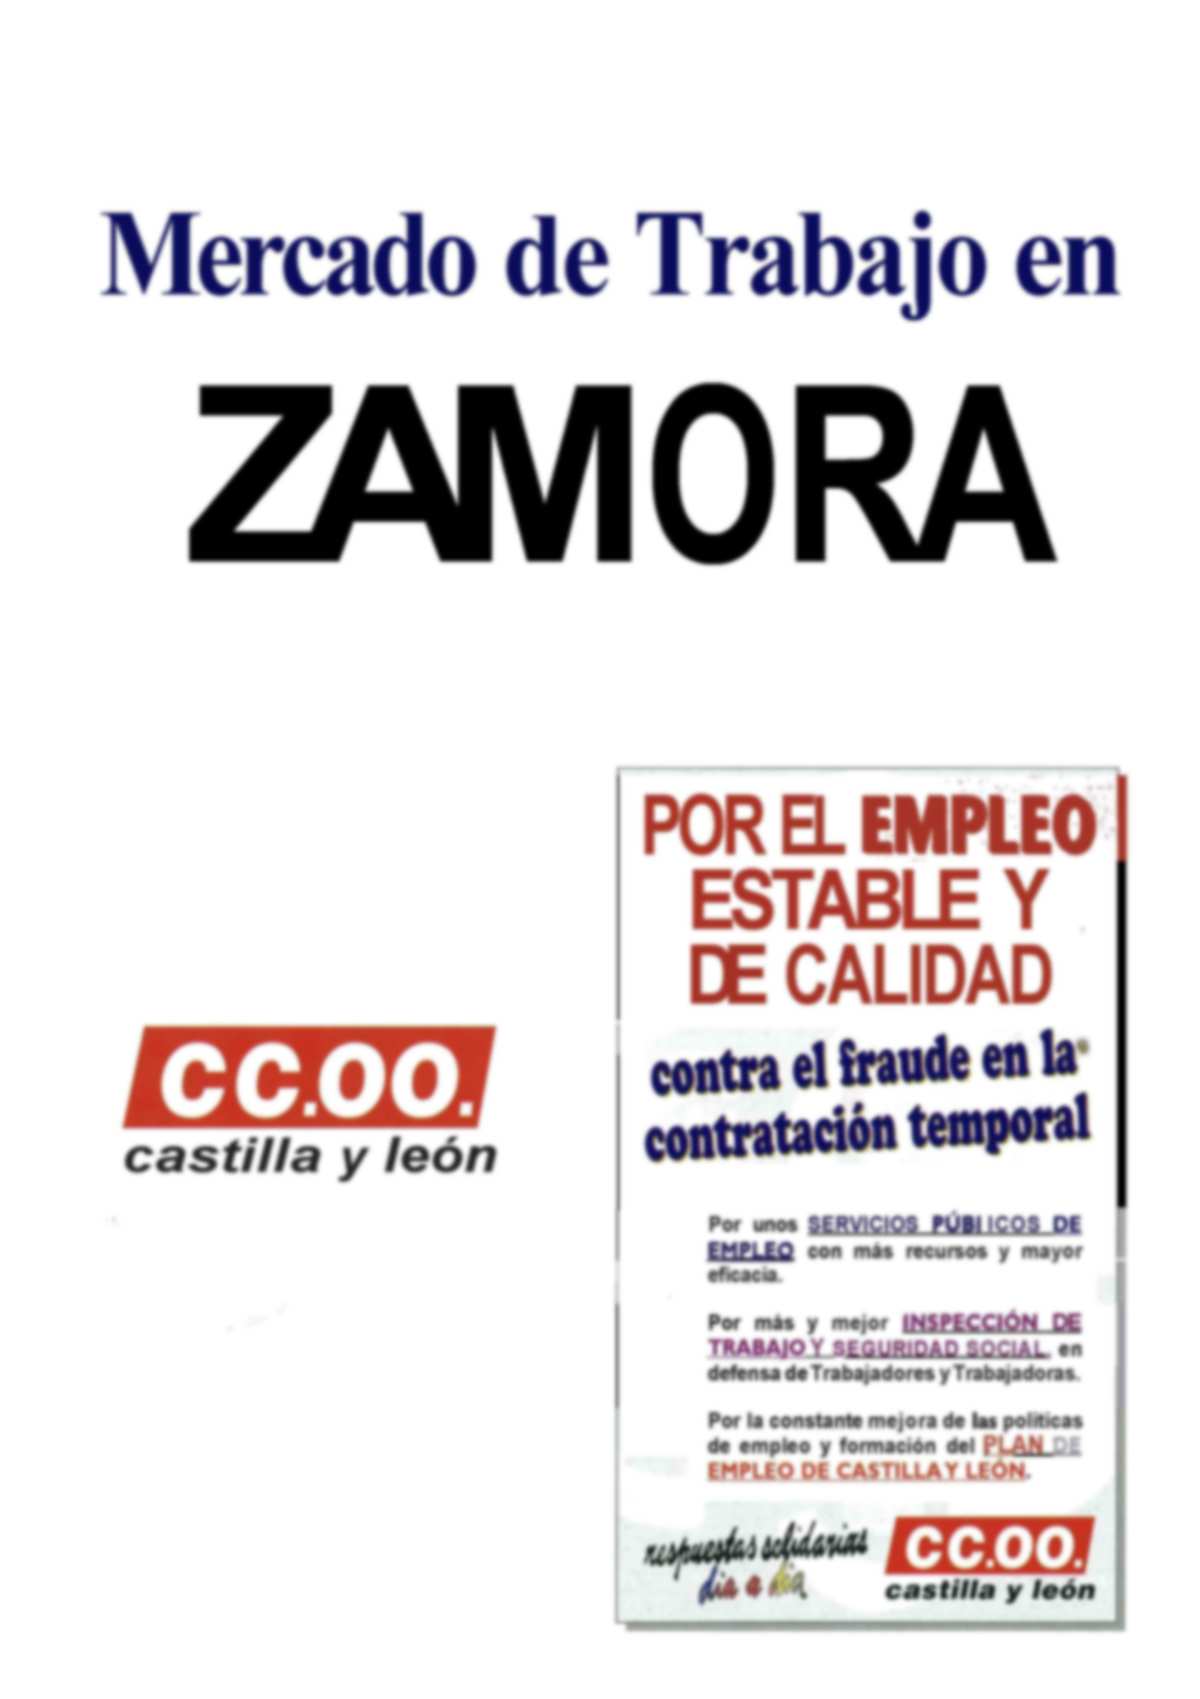 En estos informes de las 9 provincias que componen la Comunidad de Castilla y León, se analizan las principales magnitudes del mercado laboral en la provincias durante el año 2005: Actividad, Ocupació